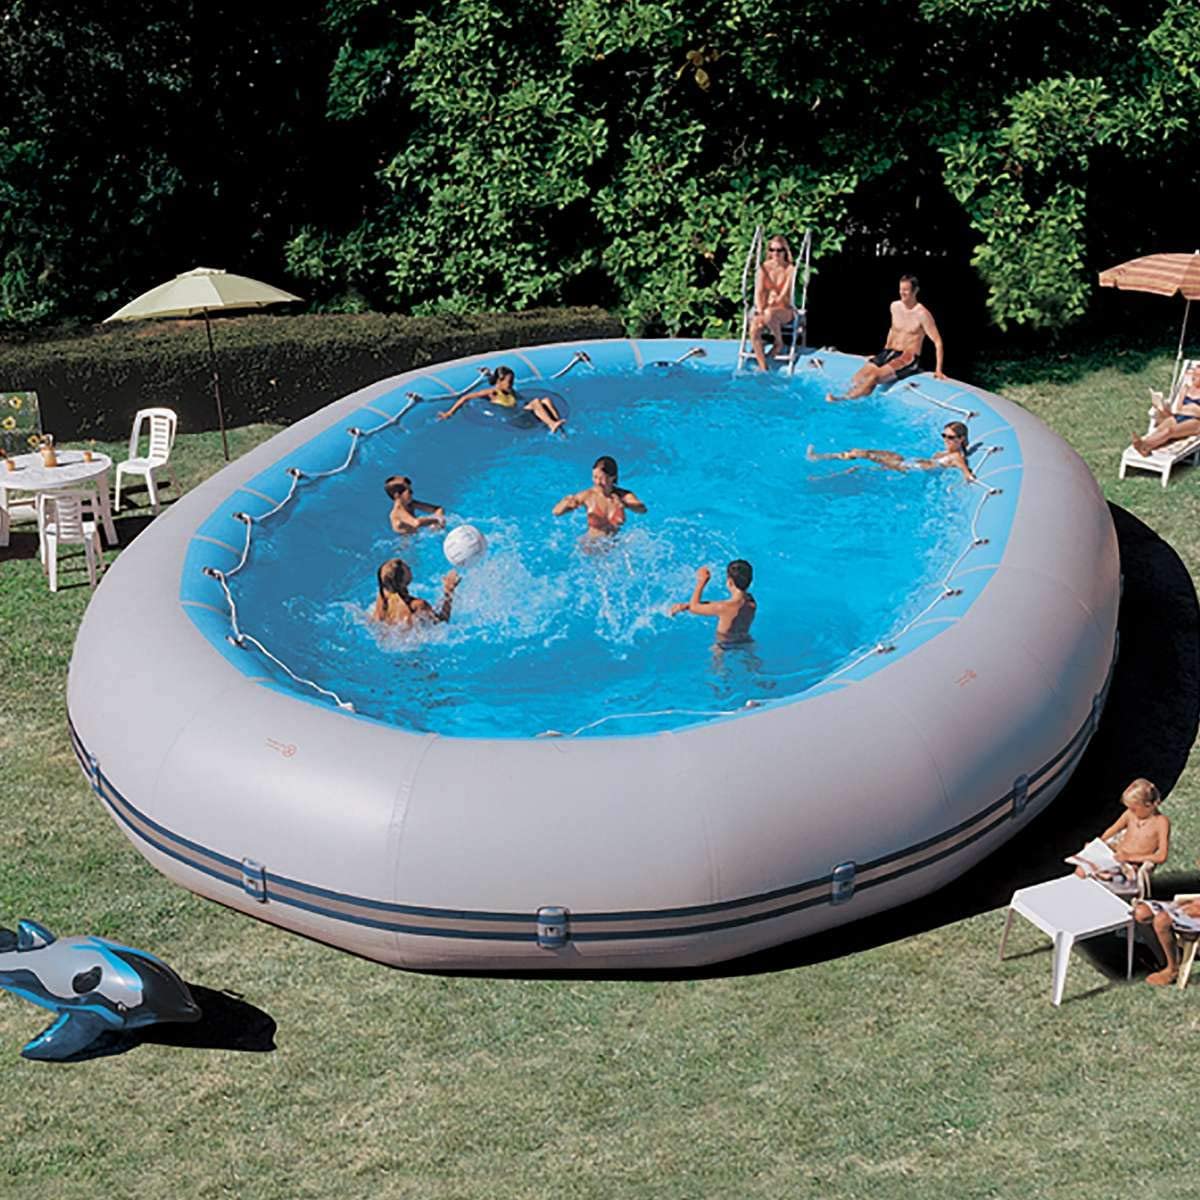 Questa piscina da esterno fuori terra è un gommone gigante, ideale per grandi giardini.